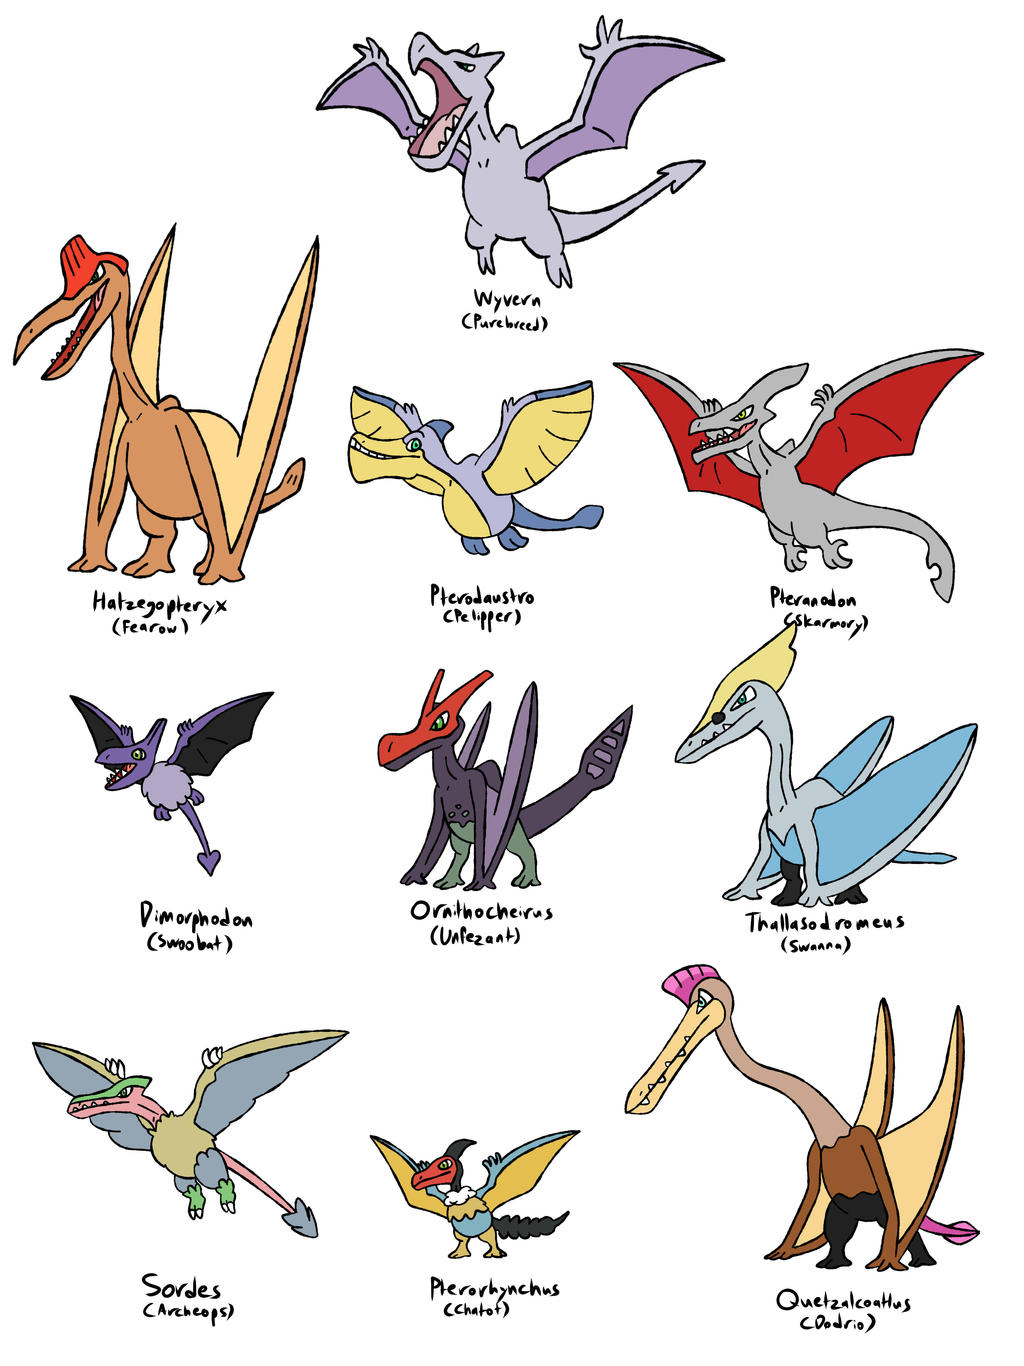 Aerodactyl: Pterosaurs  Fossil pokemon, Pokemon, Fossil